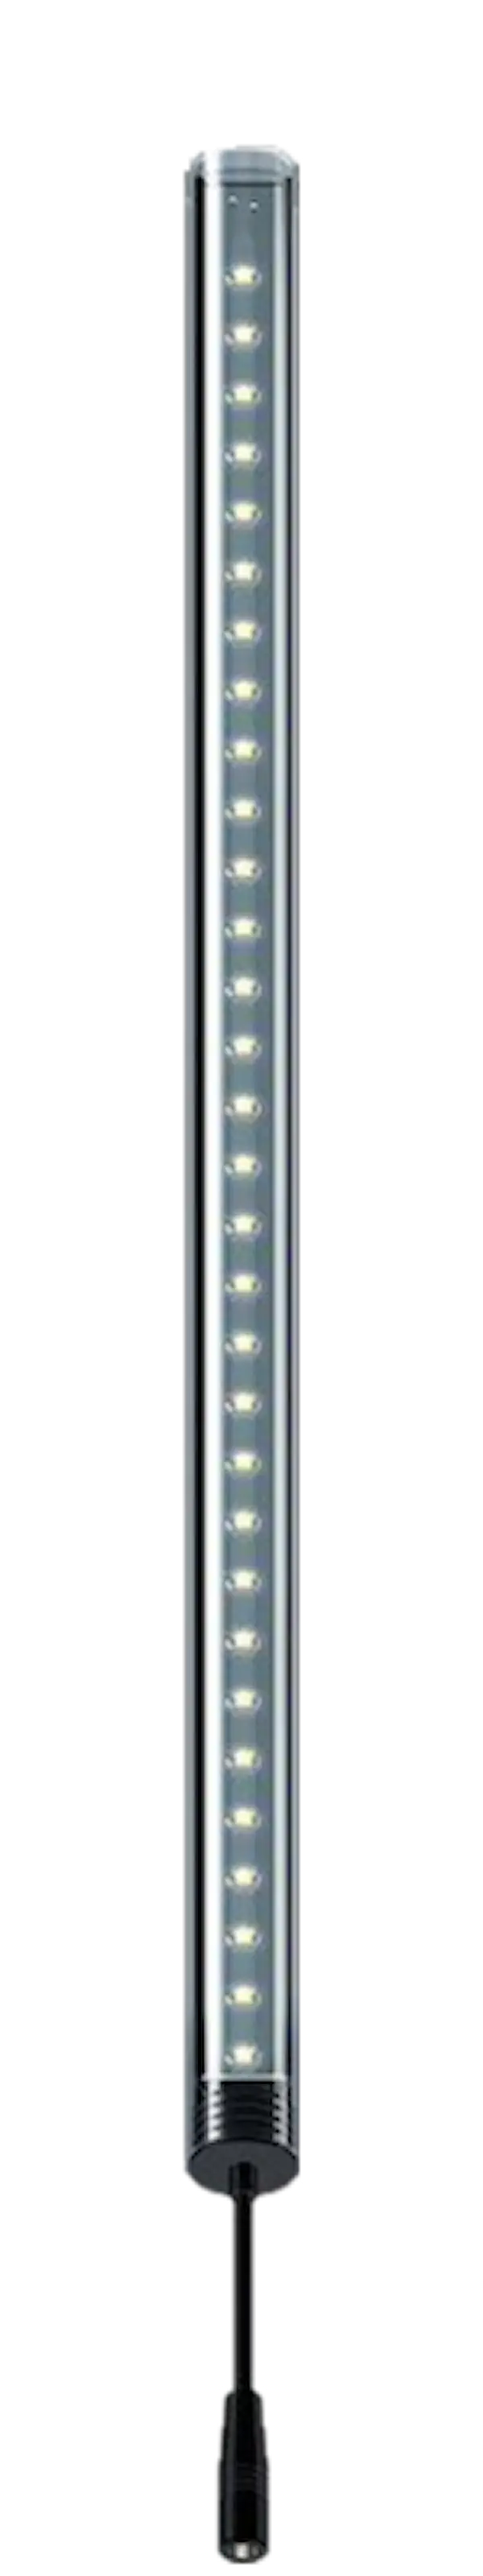 LightWave LED komplett sett, 990 - 1070 mm